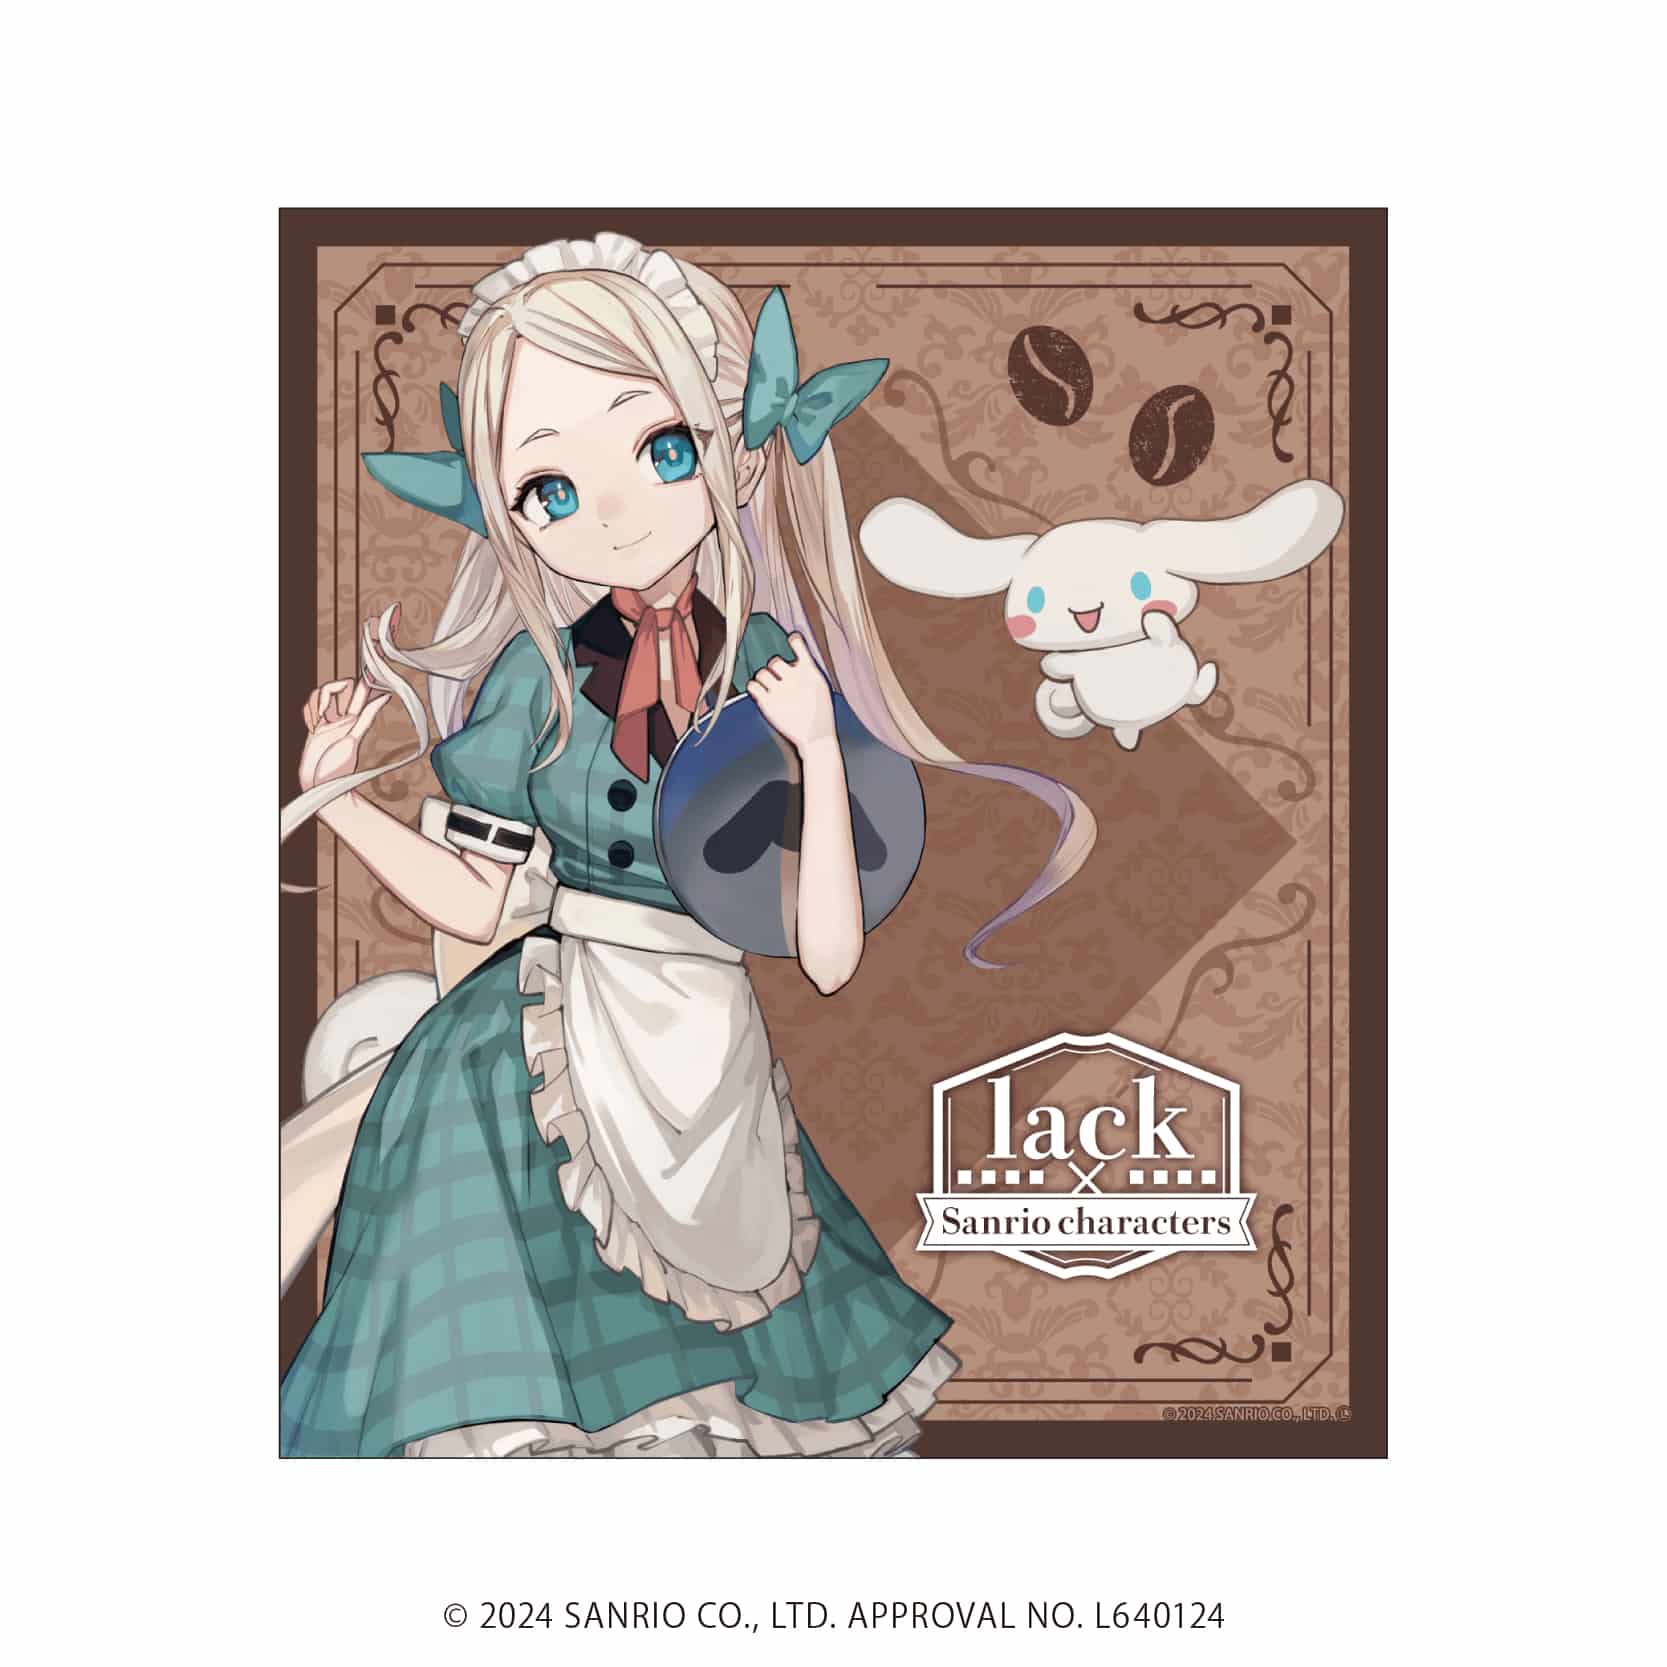 ミニ色紙「lack×サンリオキャラクターズ」01/コンプリートBOX(全5種)(コラボイラスト)